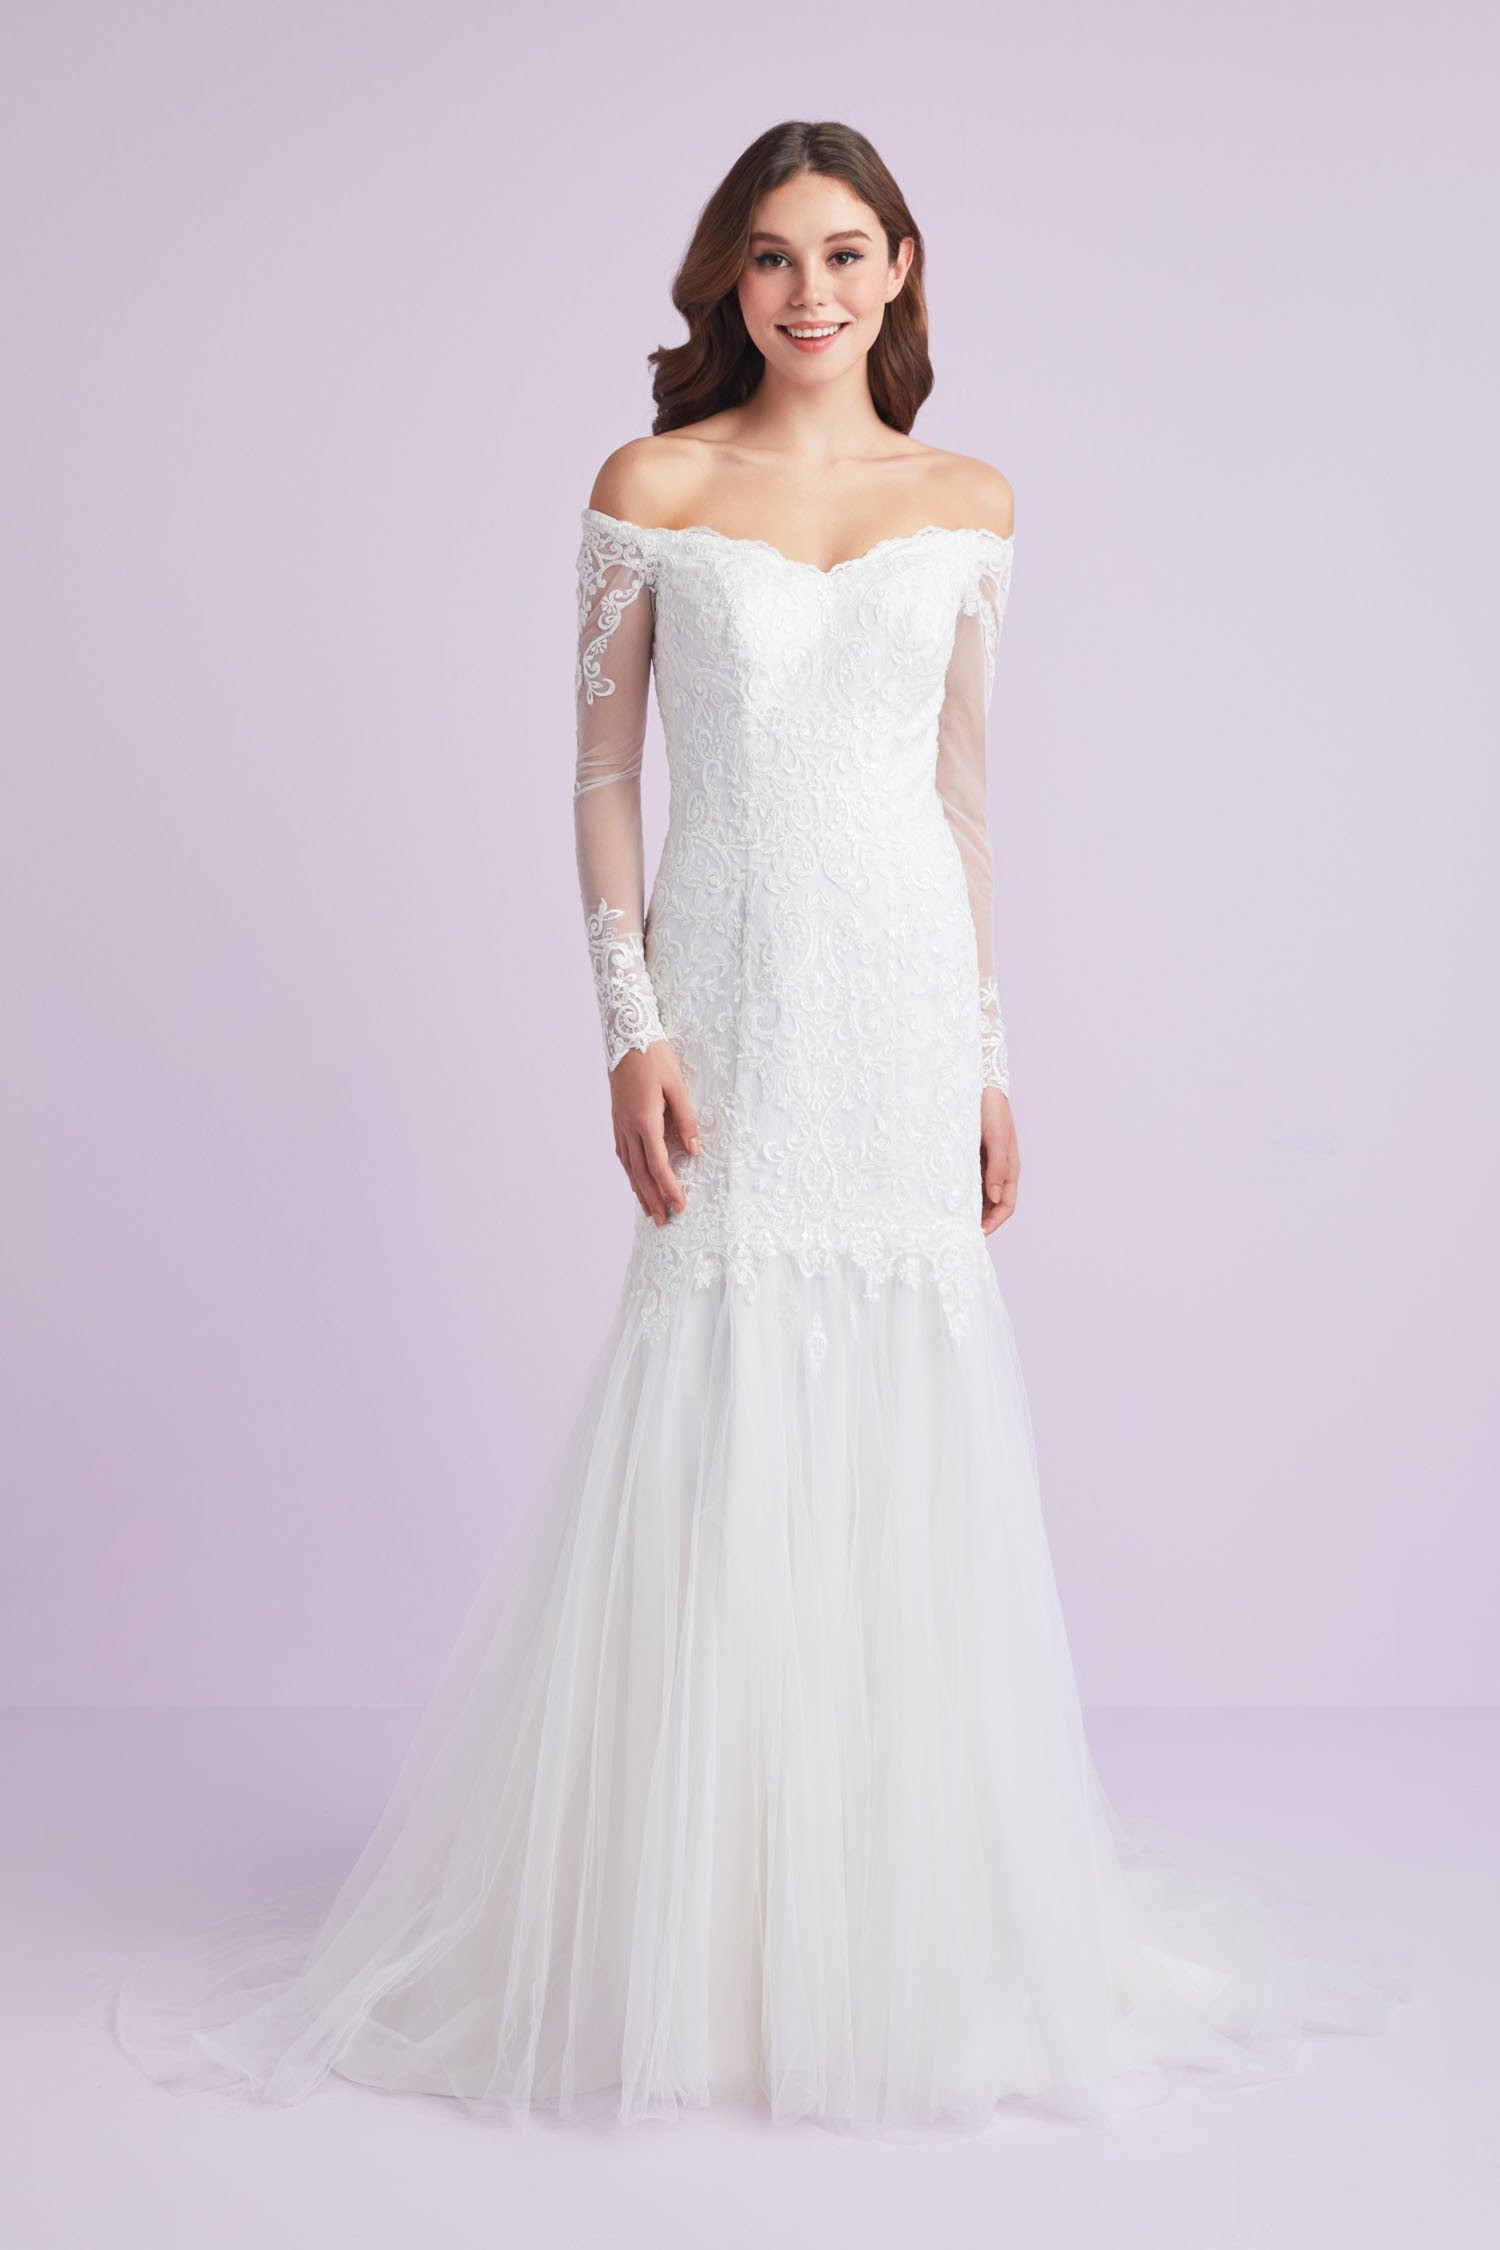 Off Shoulder Wedding Dresses
 Long Sleeve f Shoulder Plus Size Wedding Dress 9WG3943